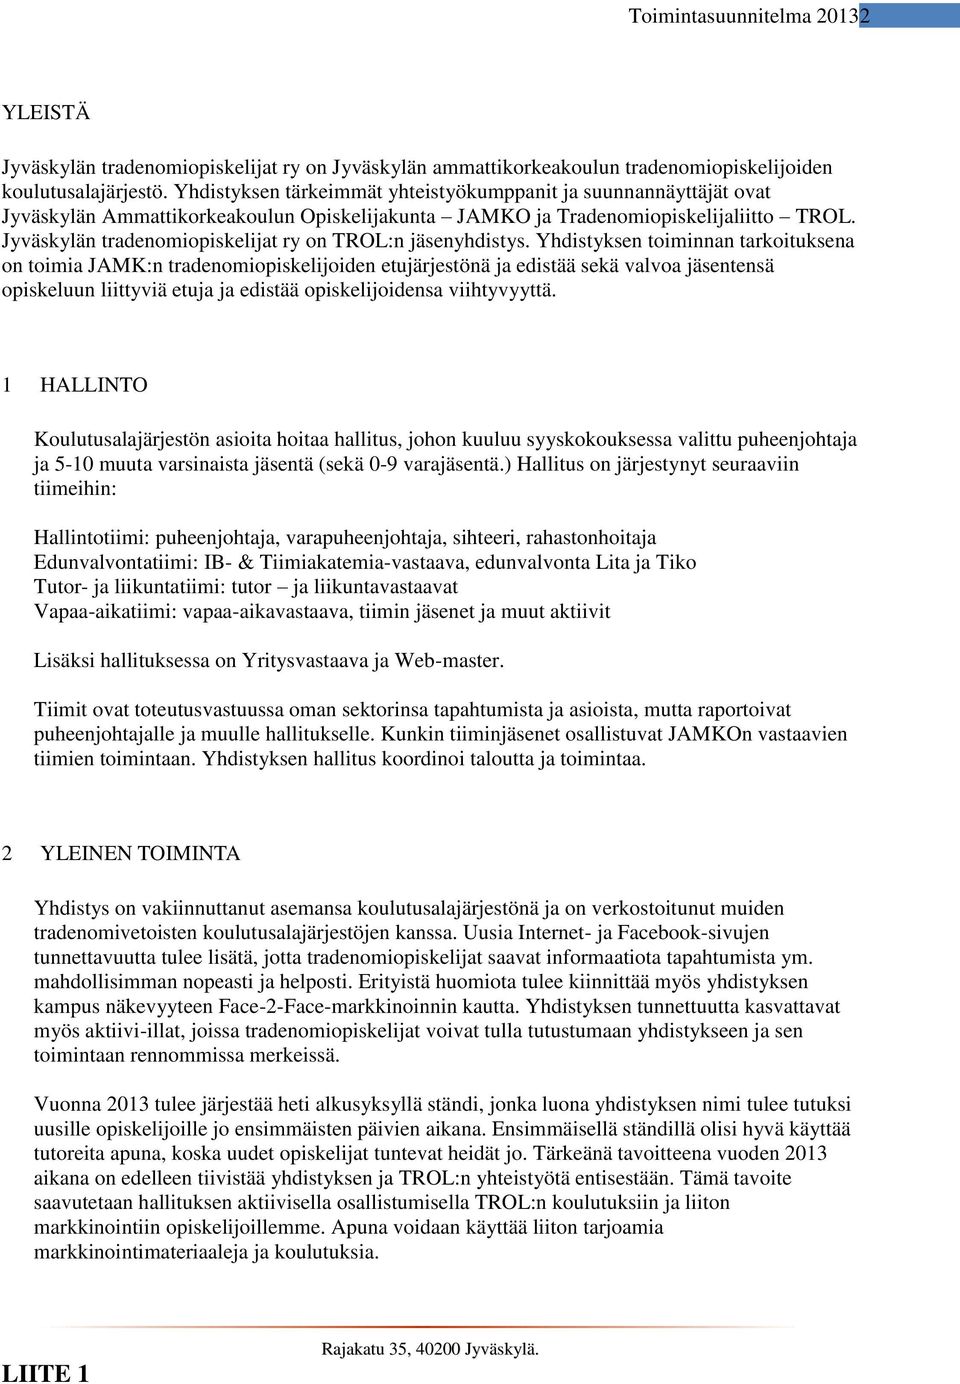 Jyväskylän tradenomiopiskelijat ry on TROL:n jäsenyhdistys.